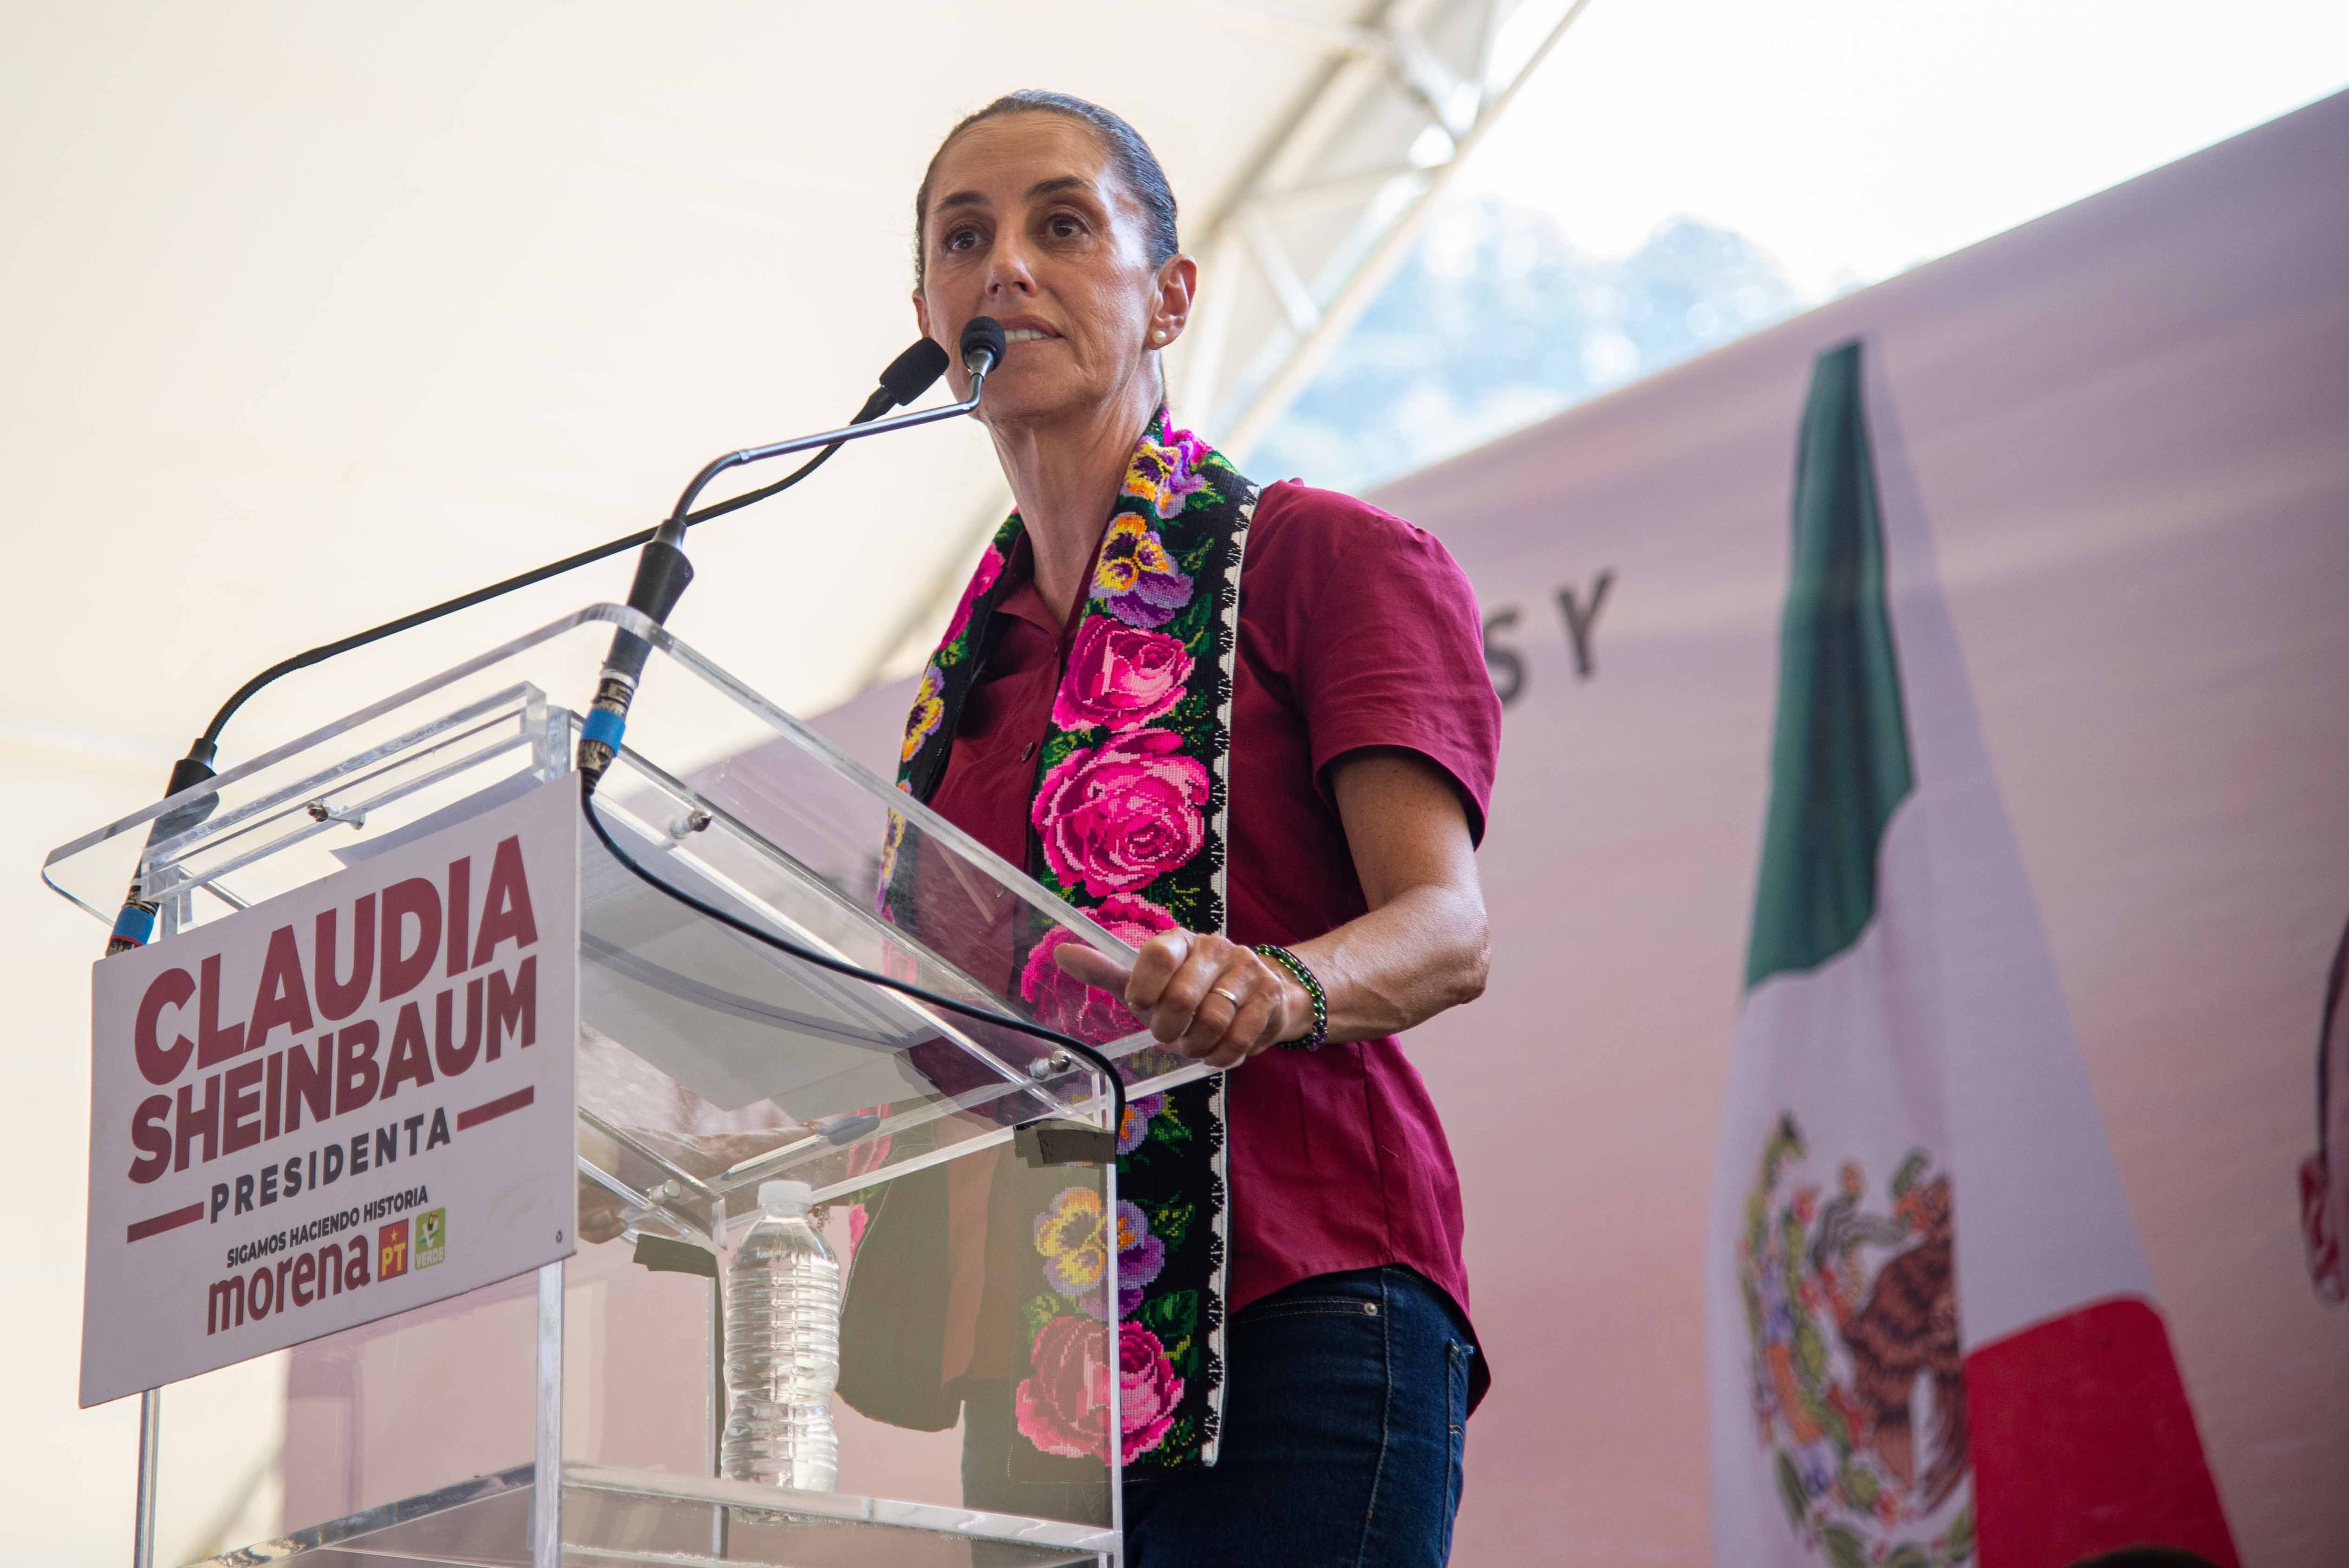 La candidata Claudia Sheinbaum fue interceptada por un grupo de encapuchados en Chiapas. [Fotografía. Cuartoscuro]